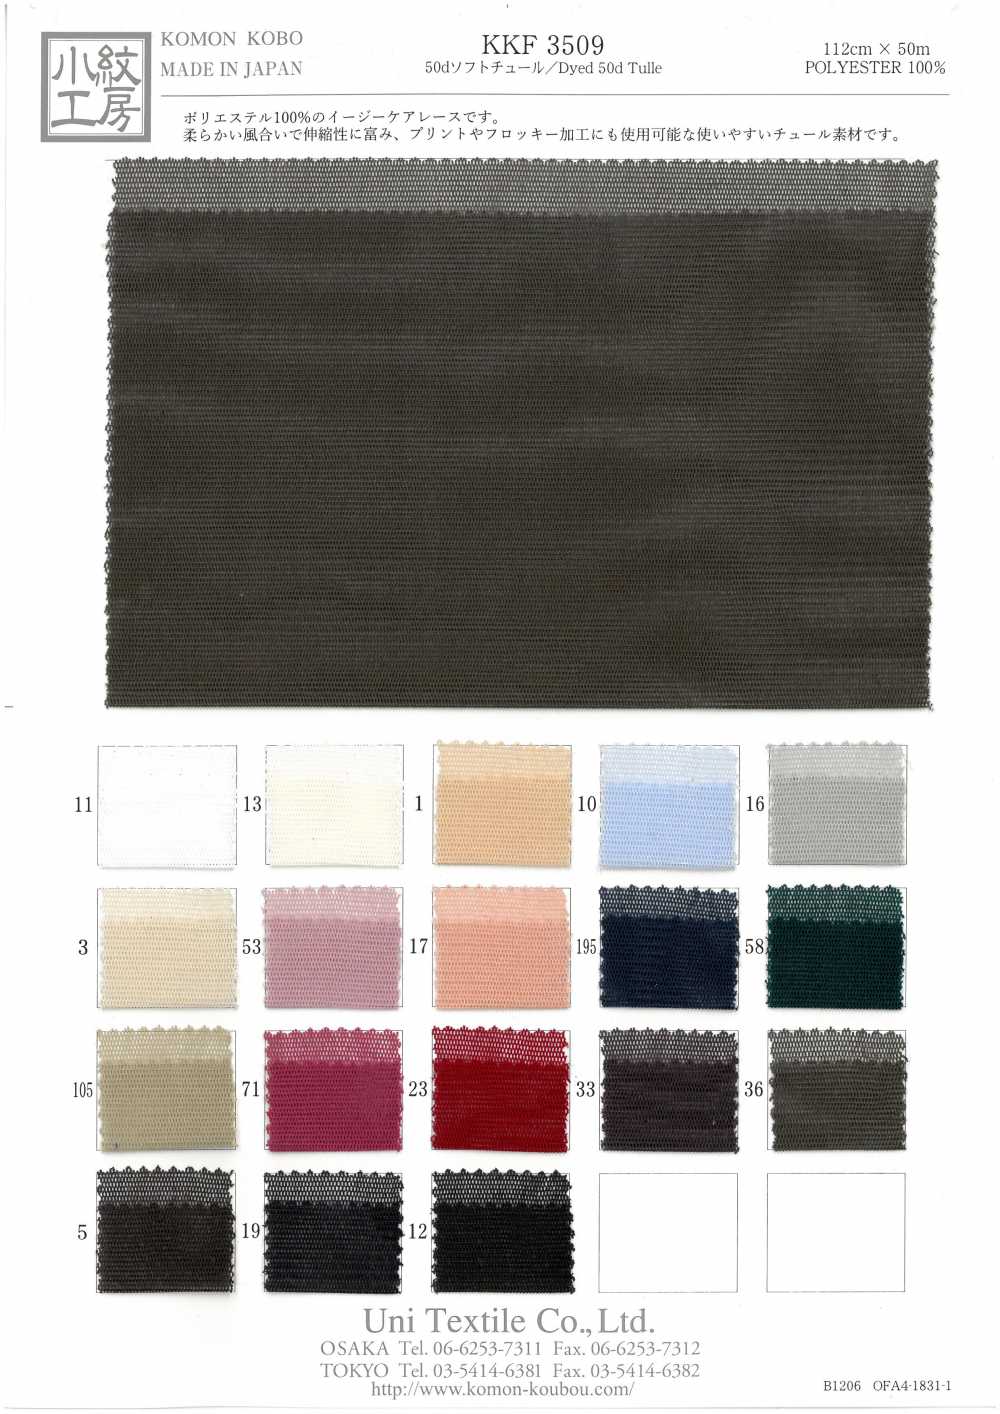 KKF3509 50d Tul Suave[Fabrica Textil] Uni Textile